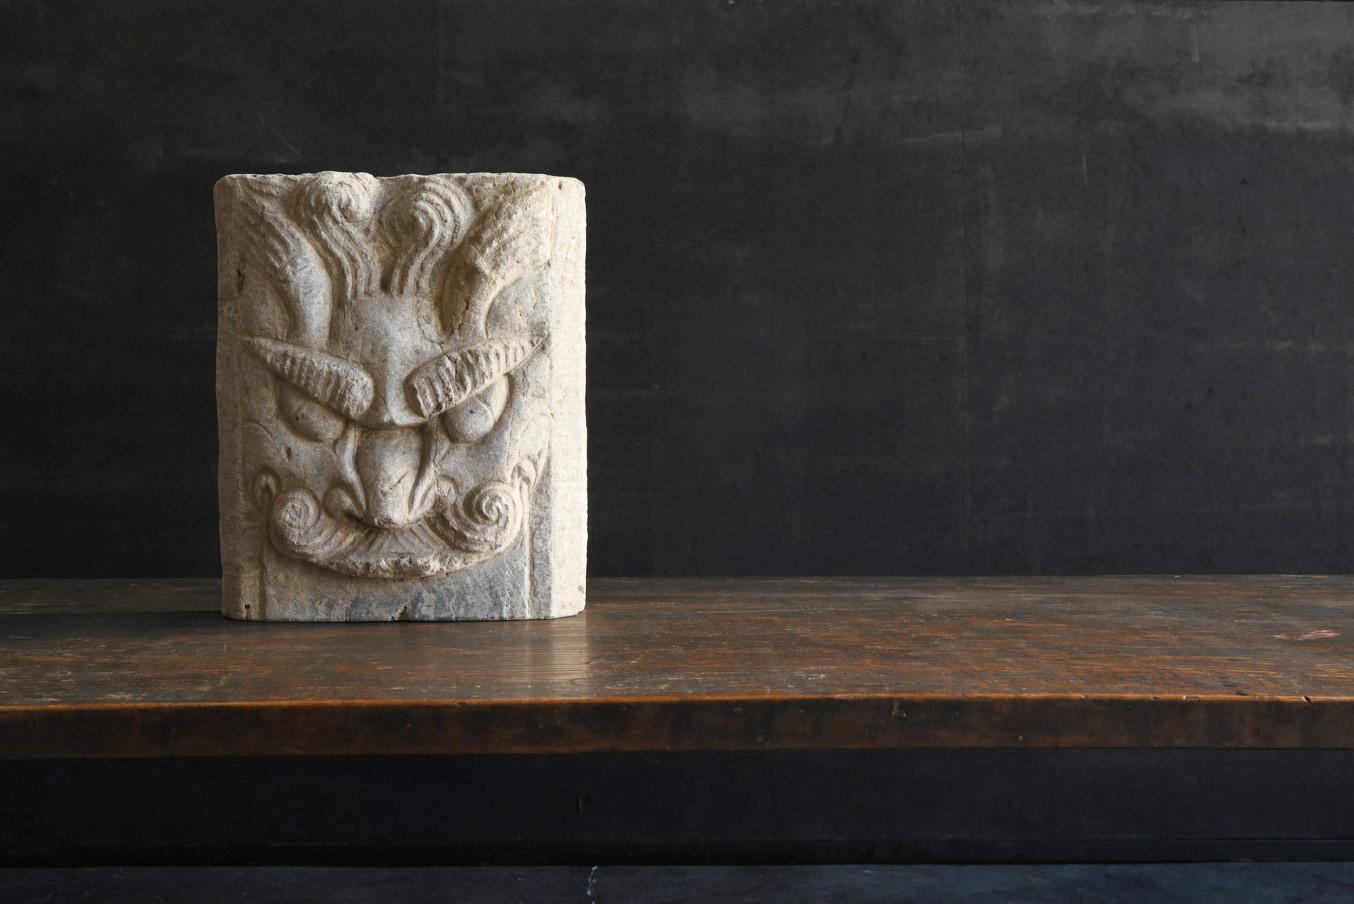 Dies ist eine geschnitzte Steinplatte, die wahrscheinlich in China hergestellt wurde.
Was dargestellt wird, ist wahrscheinlich ein Drache.
Ein Drache mit einem tapferen Gesicht ist mit zwei hochgezogenen Augenbrauen geschnitzt.
Es wird vermutet,